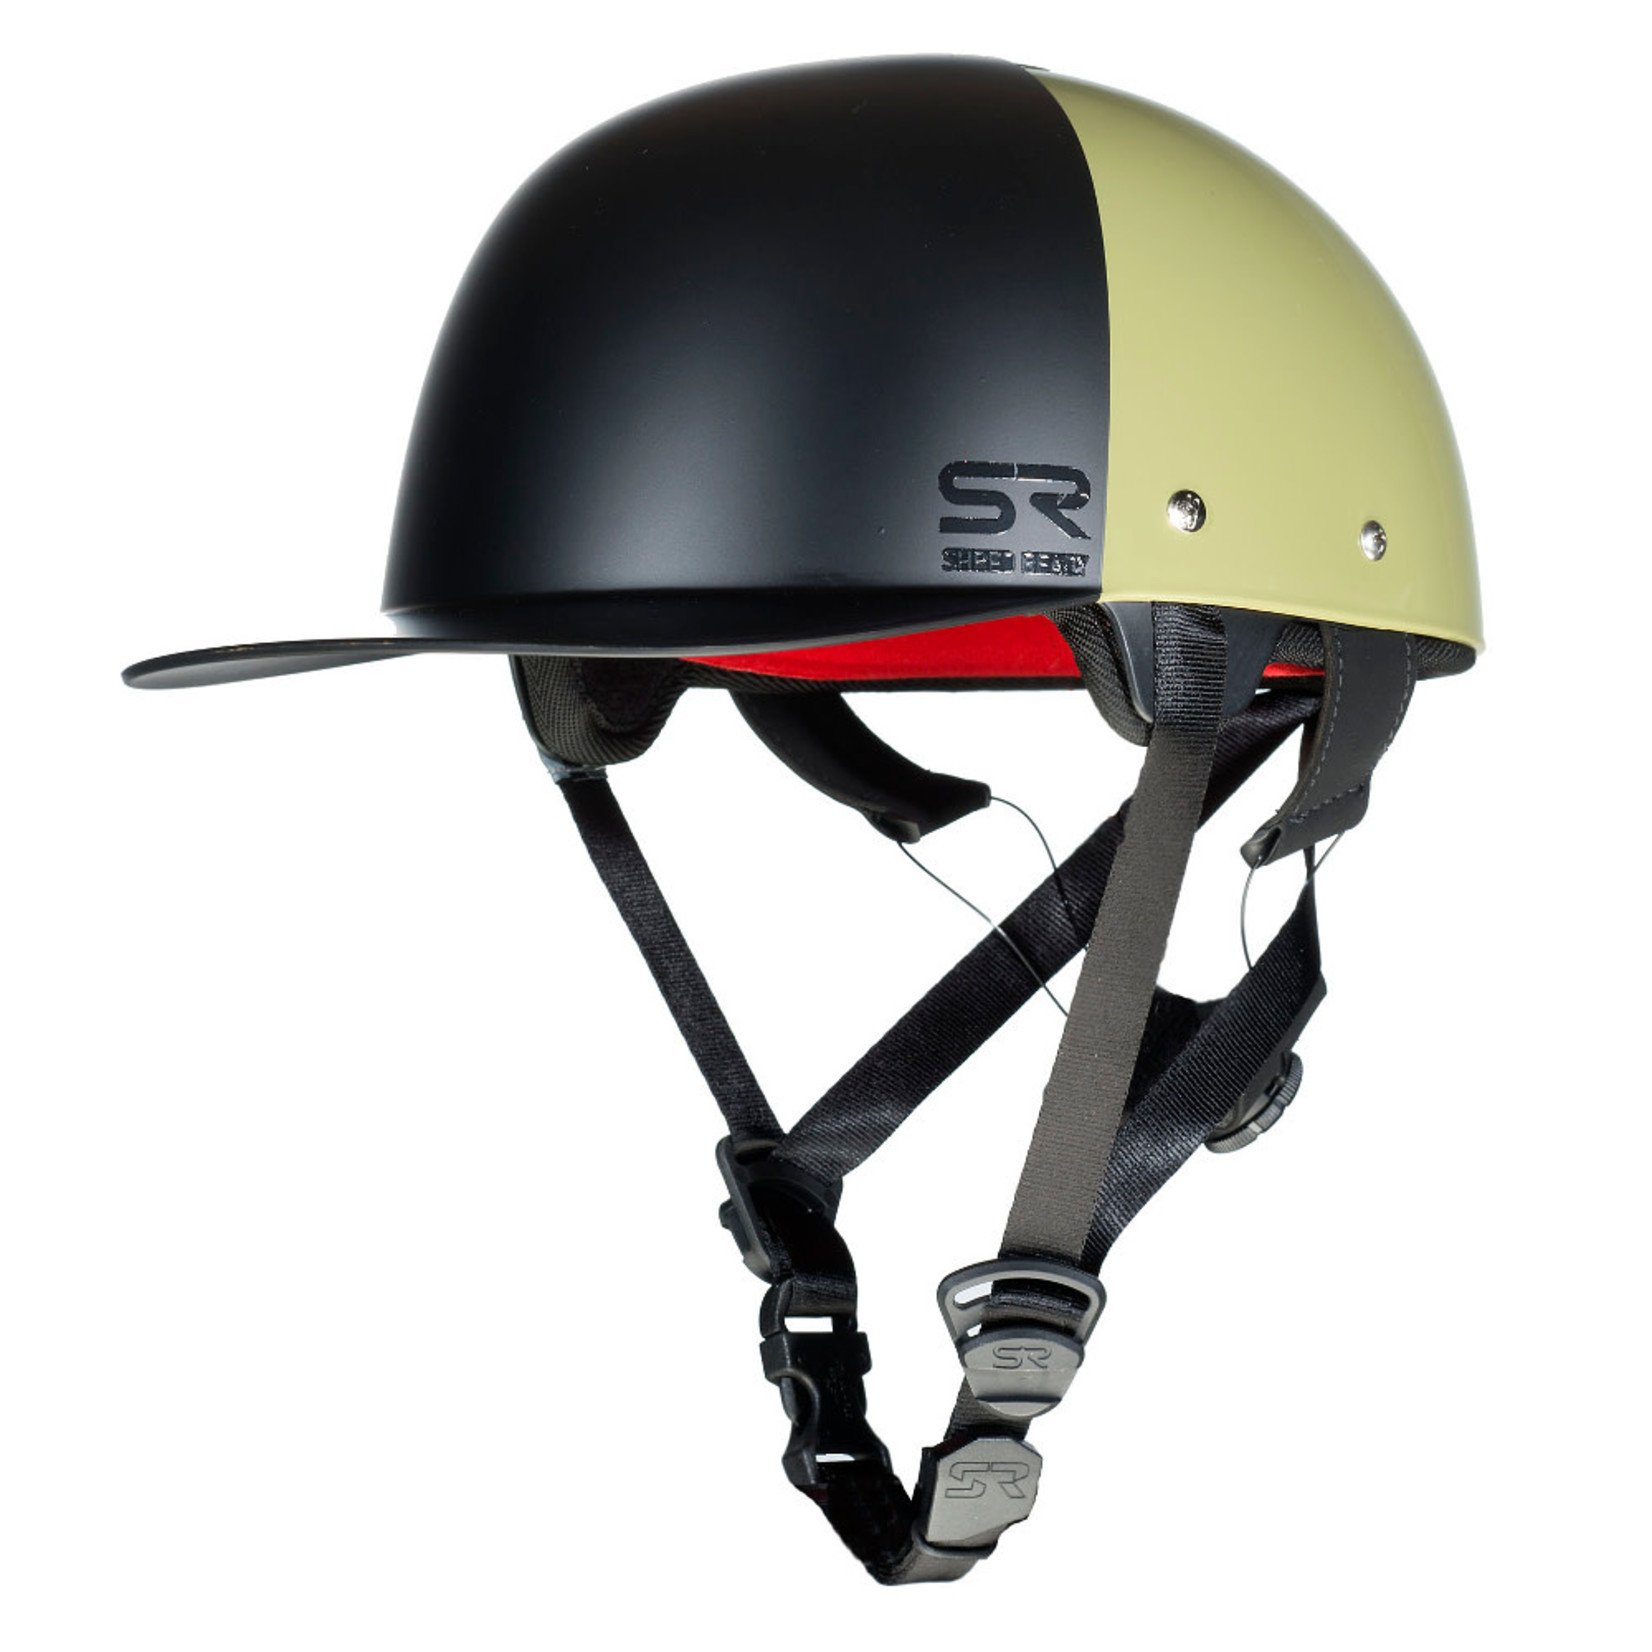 Shred Ready Shred Ready Zeta Helmet